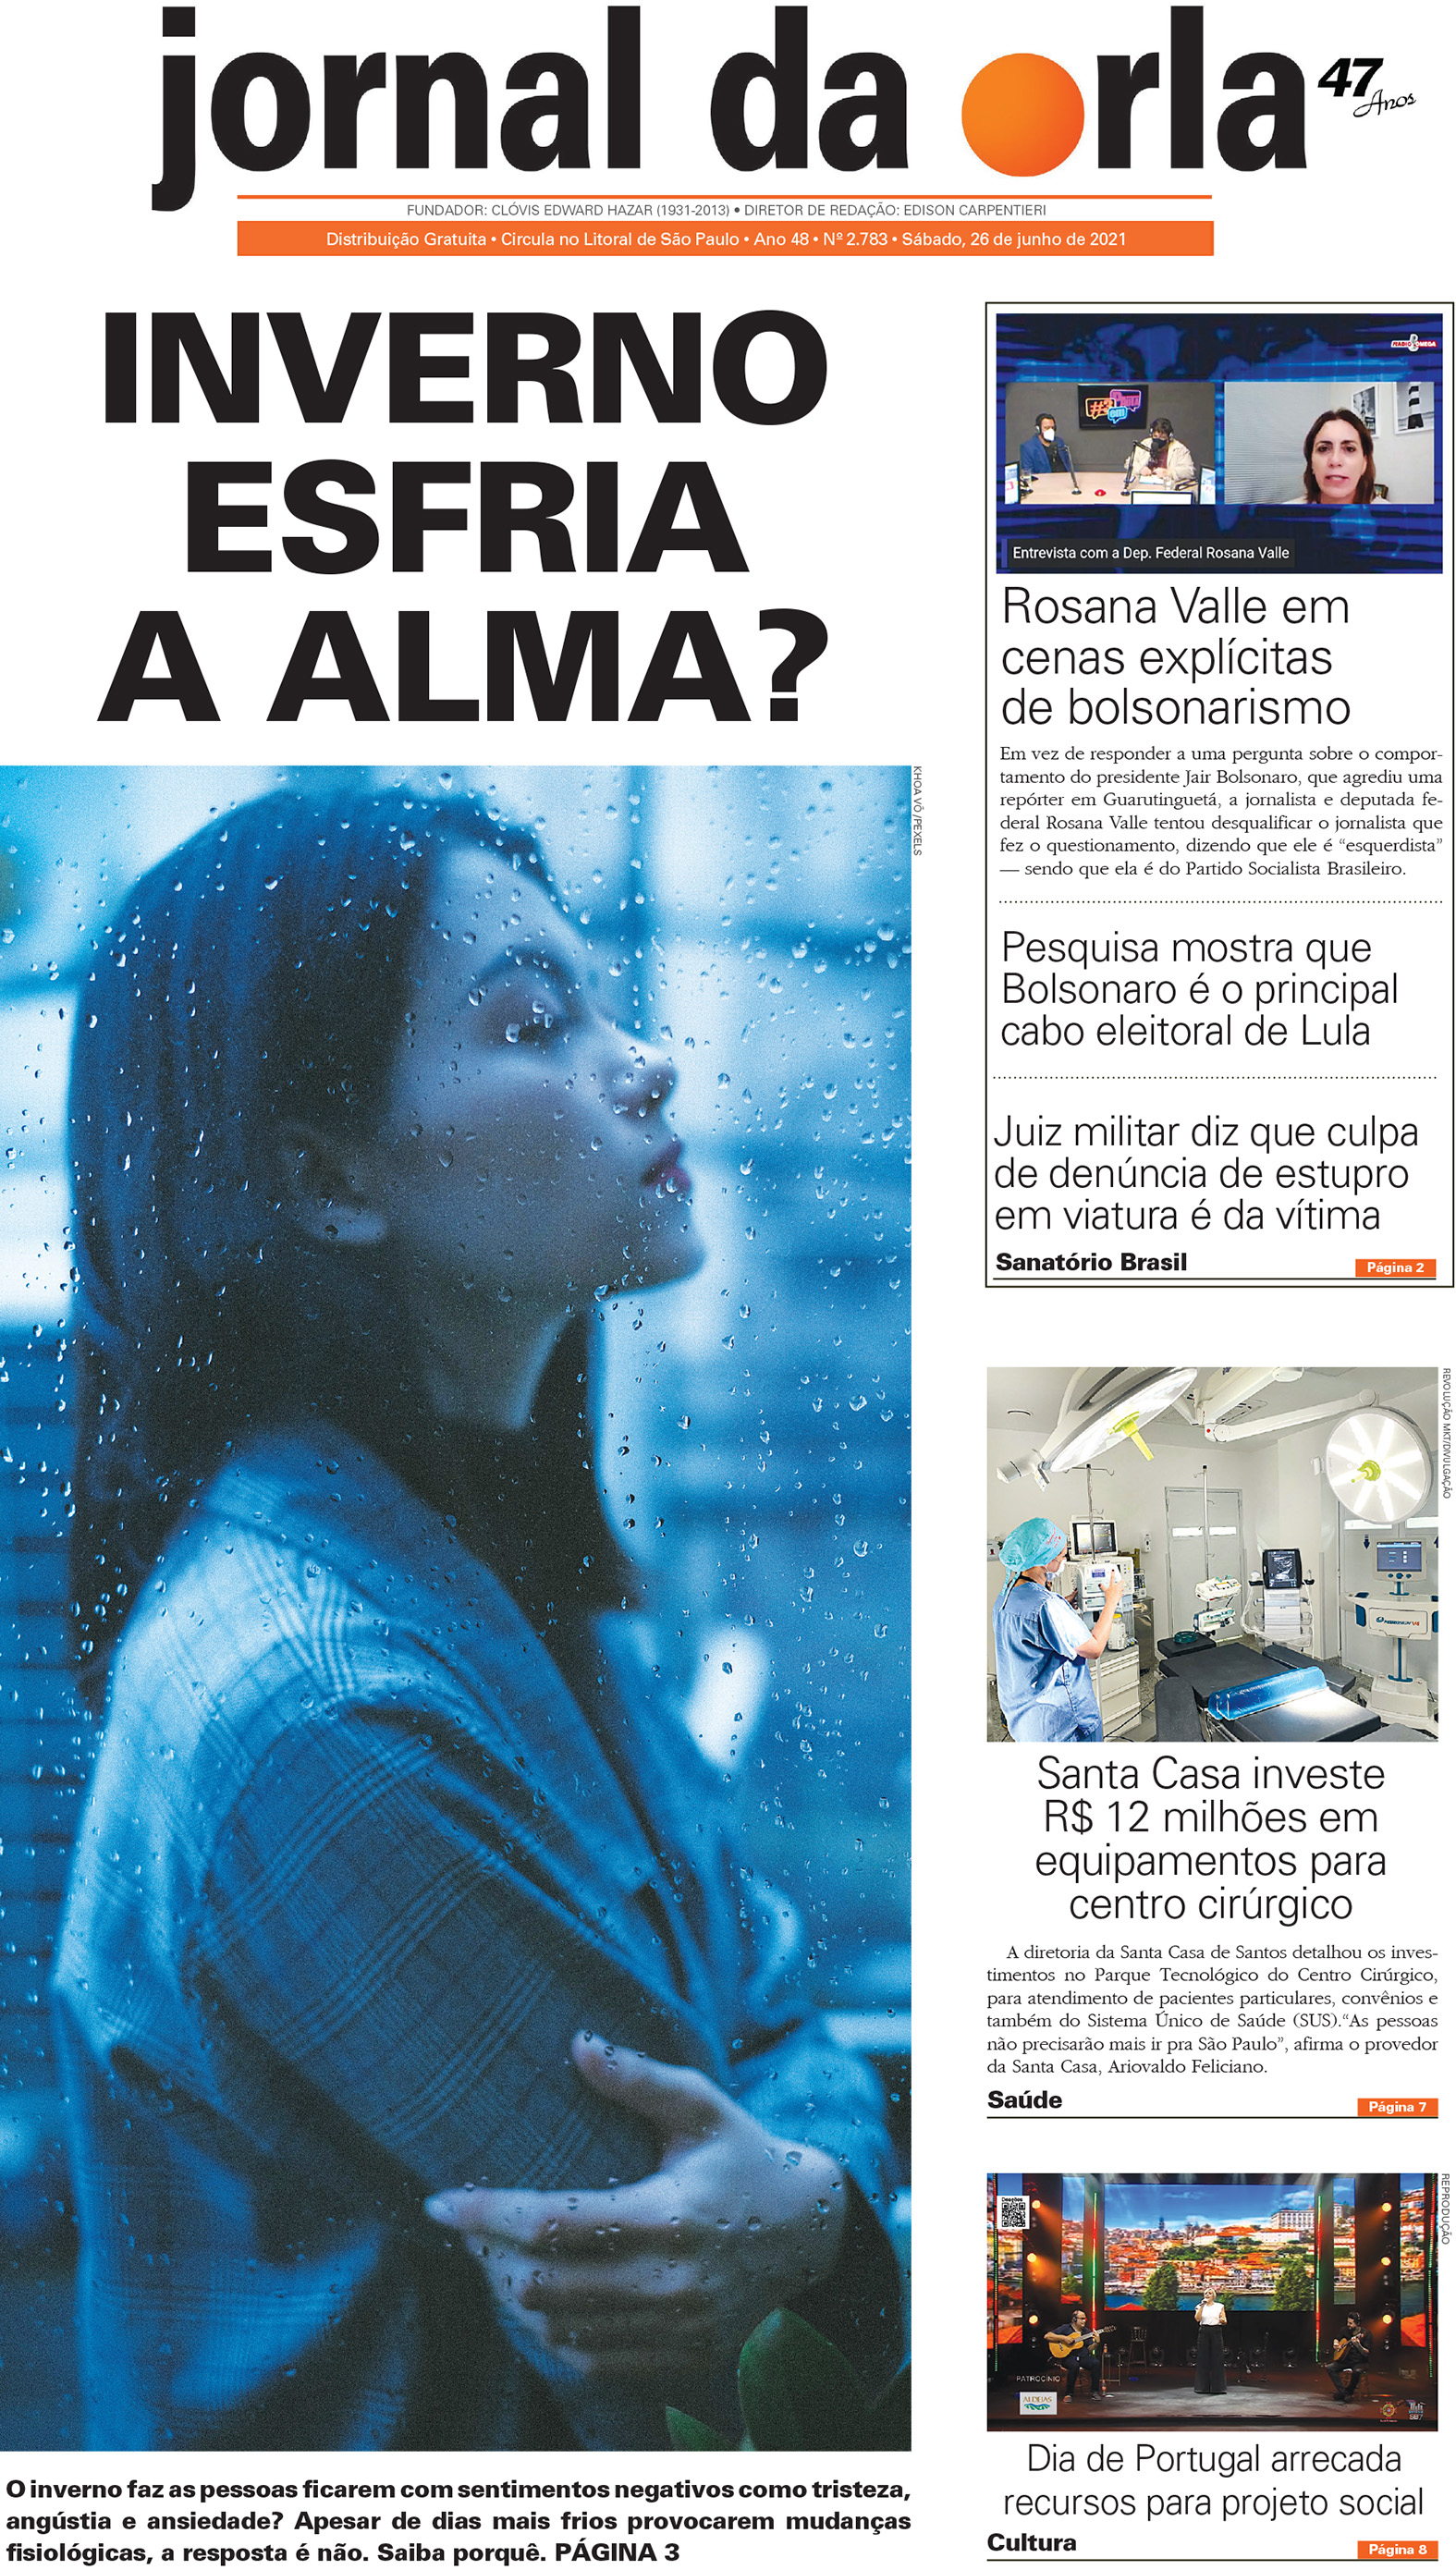 26/06/2021 | Jornal da Orla